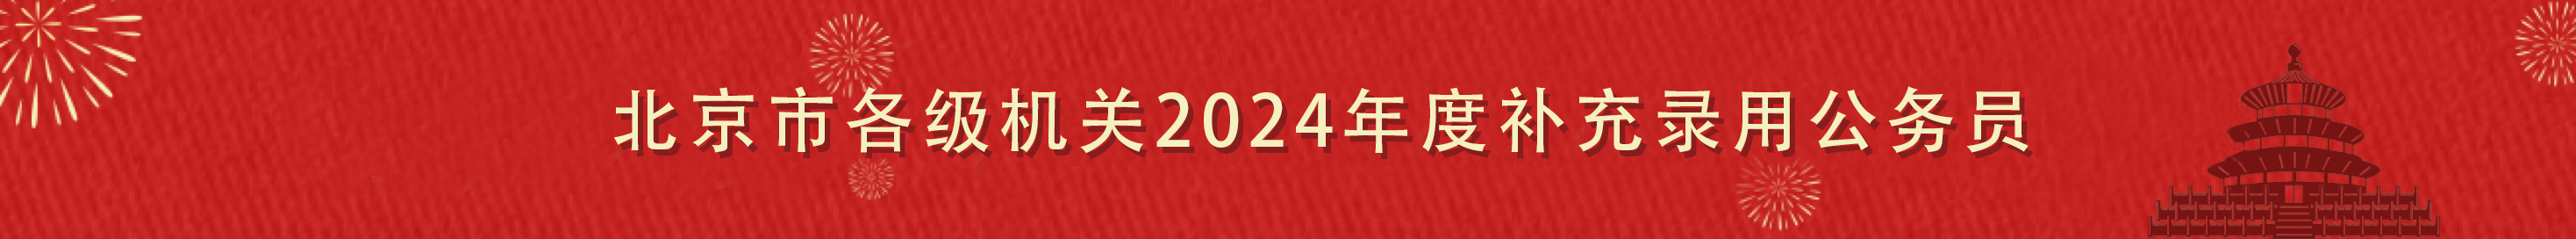 北京市各级机关2024年度考试录用公务员